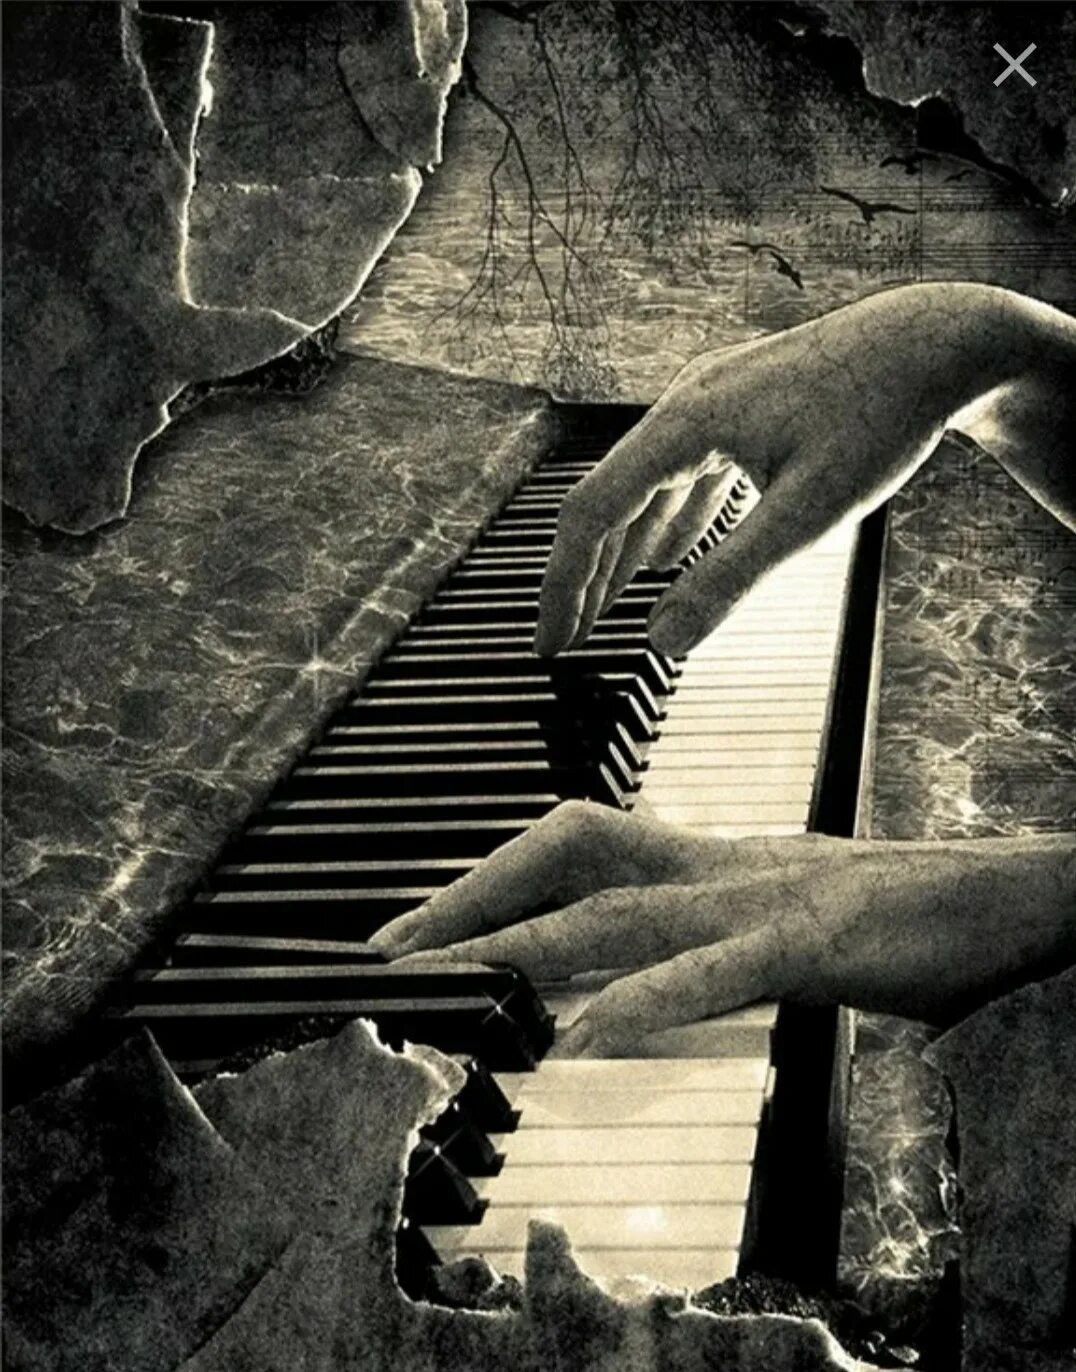 Песни грусти и печали. Грустное пианино. Сюрреализм пианино. Одинокий пианист. Одиночество души.